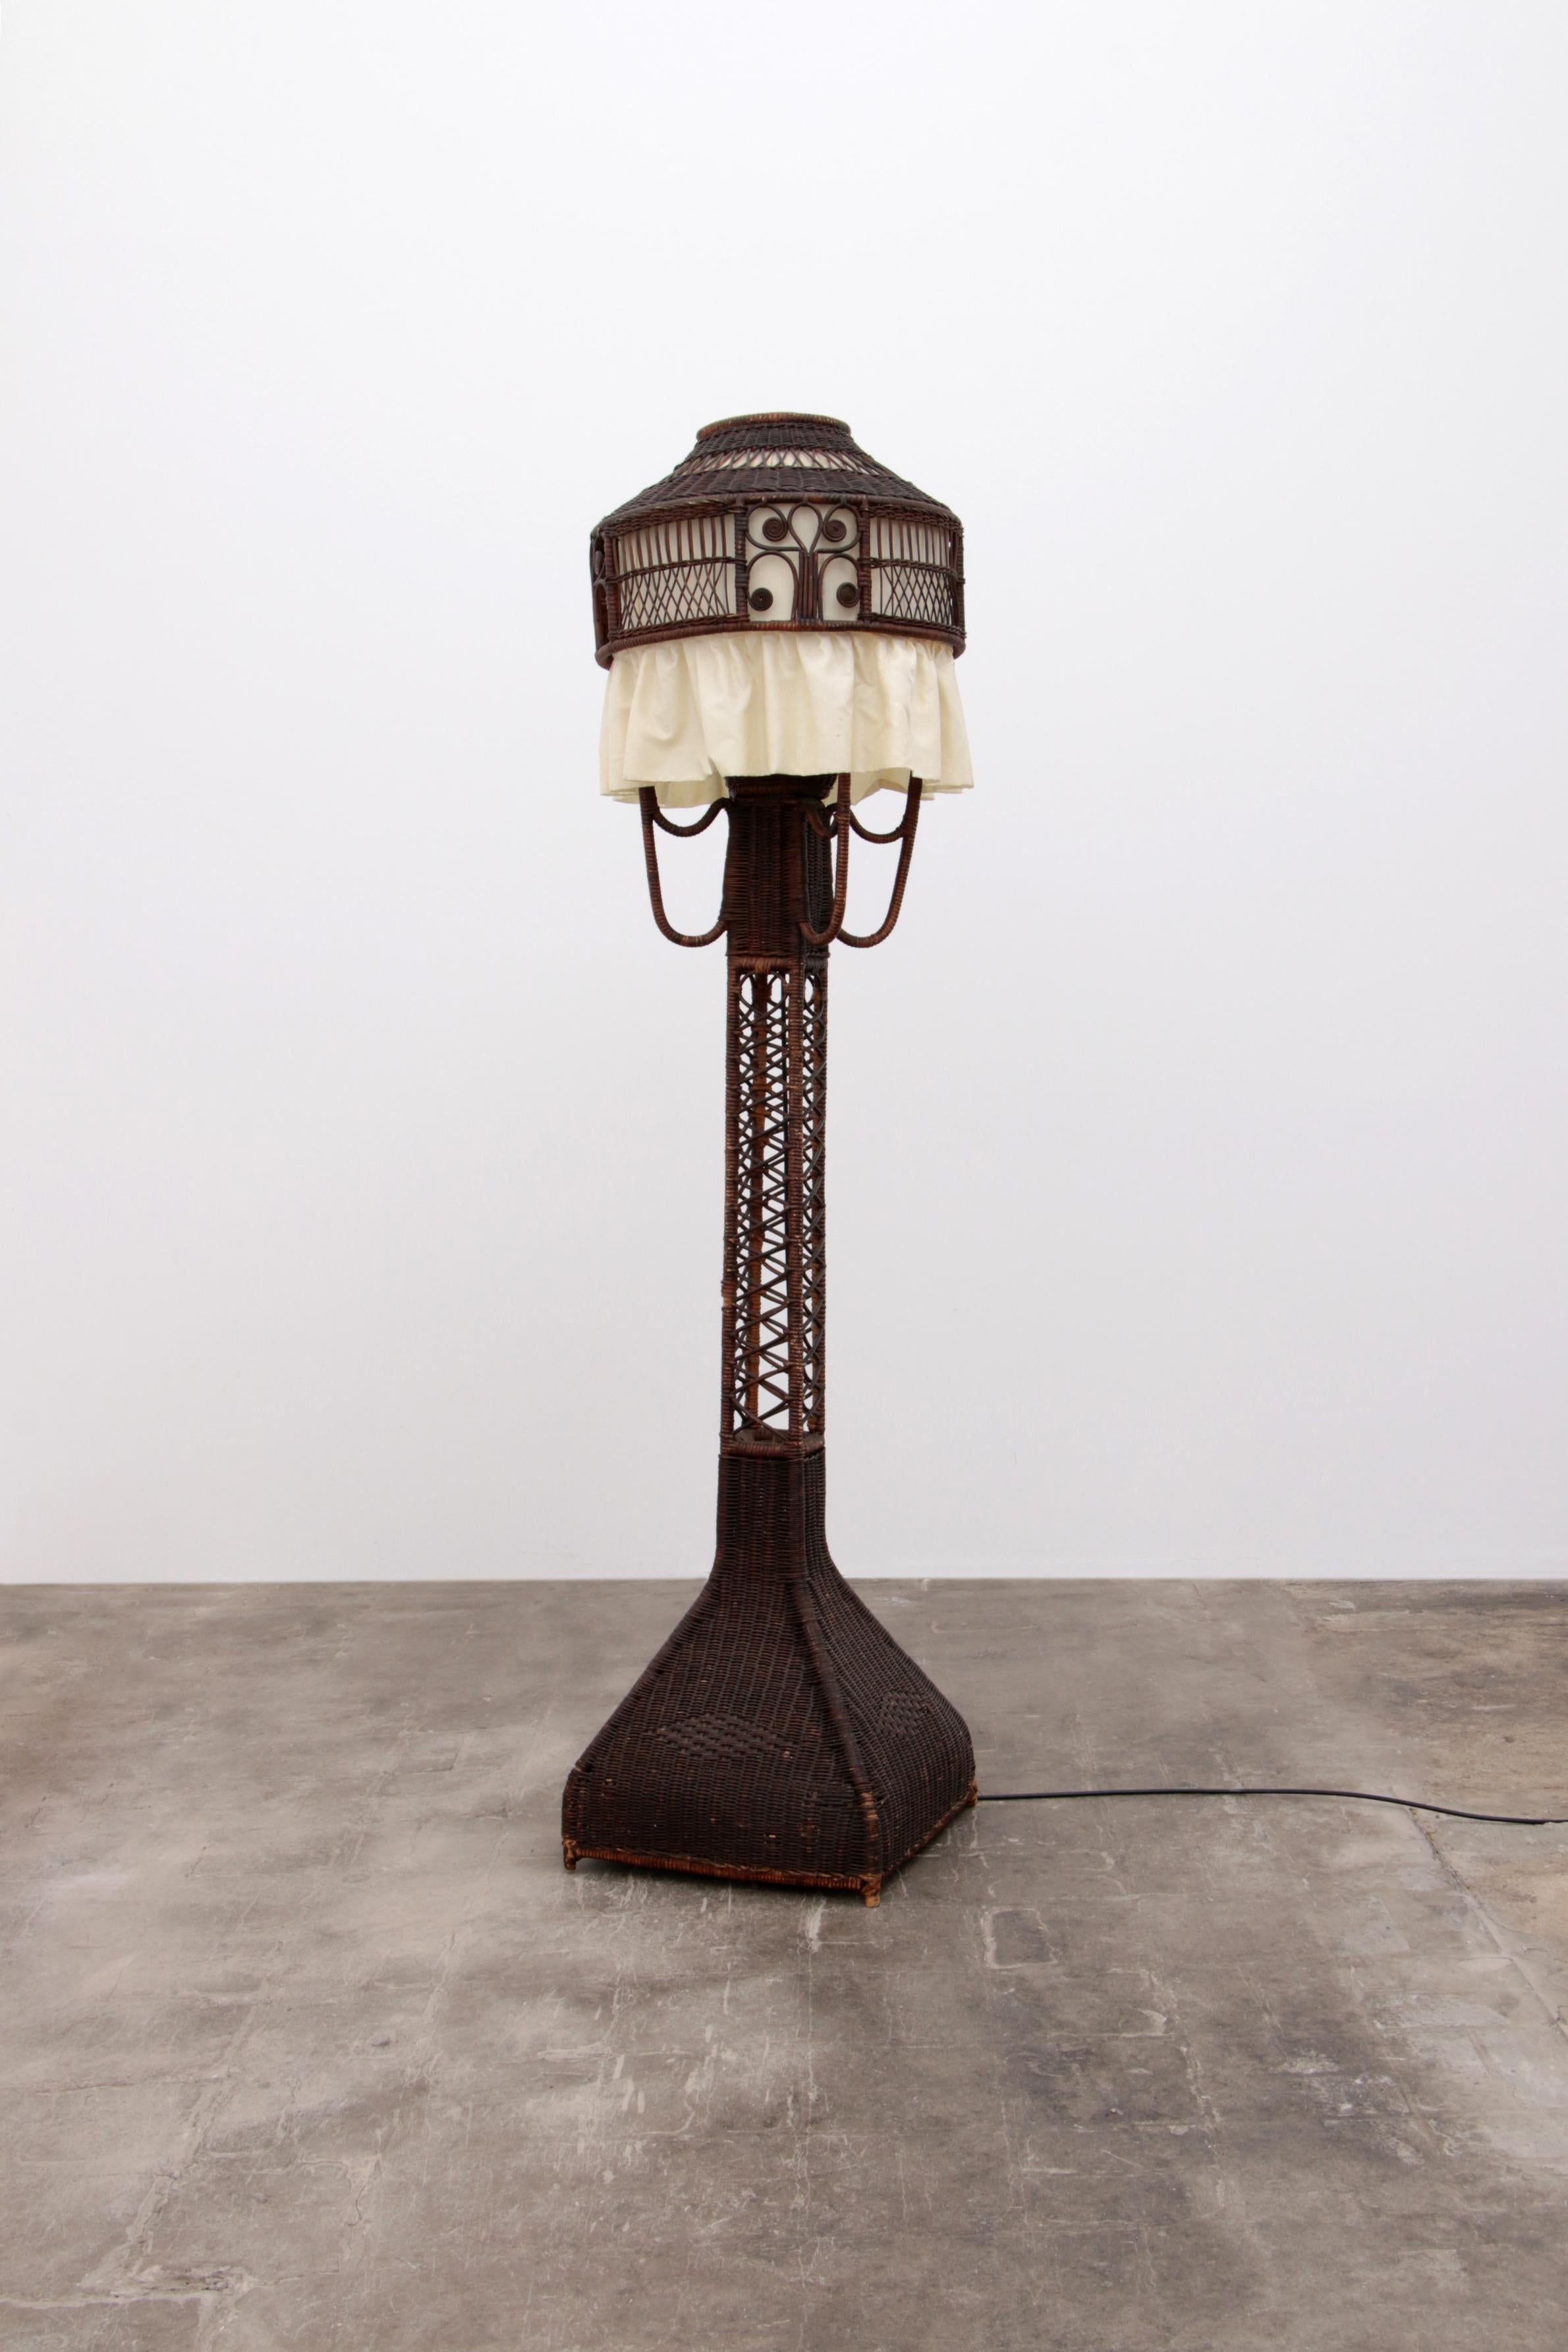 Stehleuchte aus Rattan und Bambus mit Stoffschirm im Stil von Heywood Wakkefield Campany

Stehlampe aus Bambus mit Stoffschirm - Vintage Look aus den 1950er Jahren


Entdecken Sie den Charme einer vergangenen Ära mit unserer Bambus-Stehlampe, die